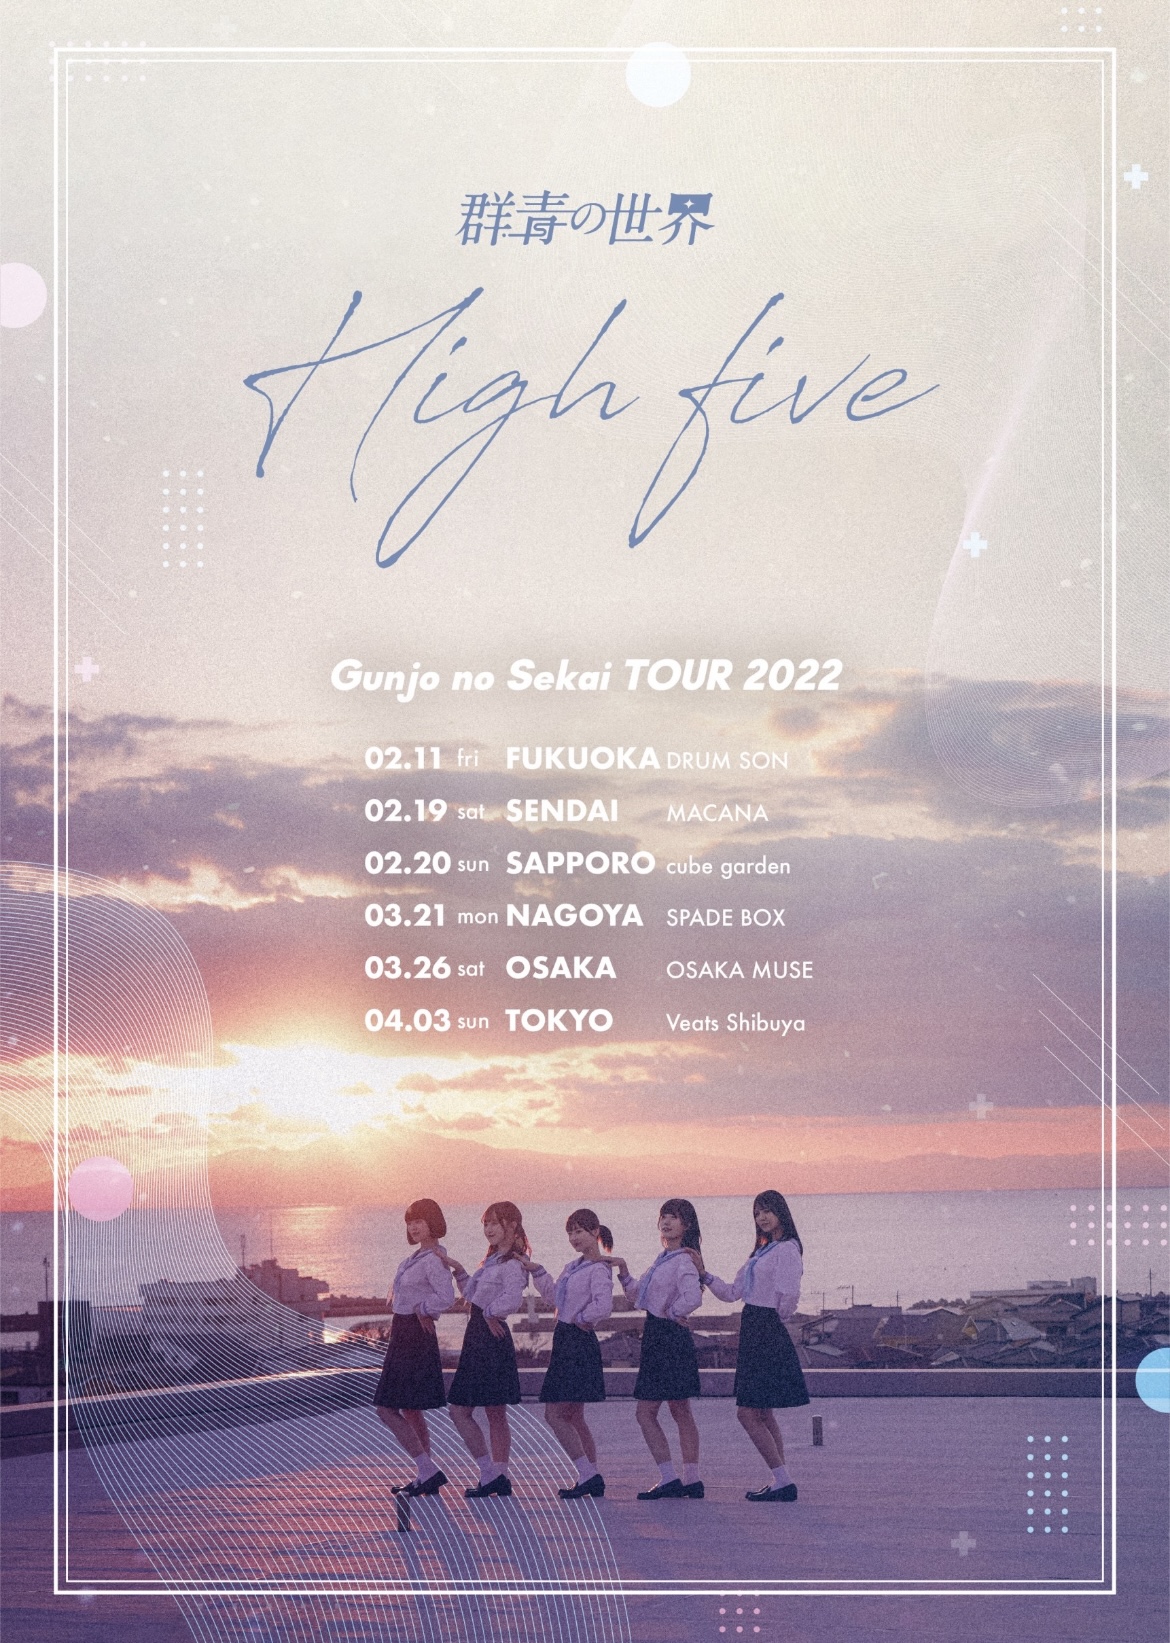 群青の世界 全国ツアー「High five」名古屋公演